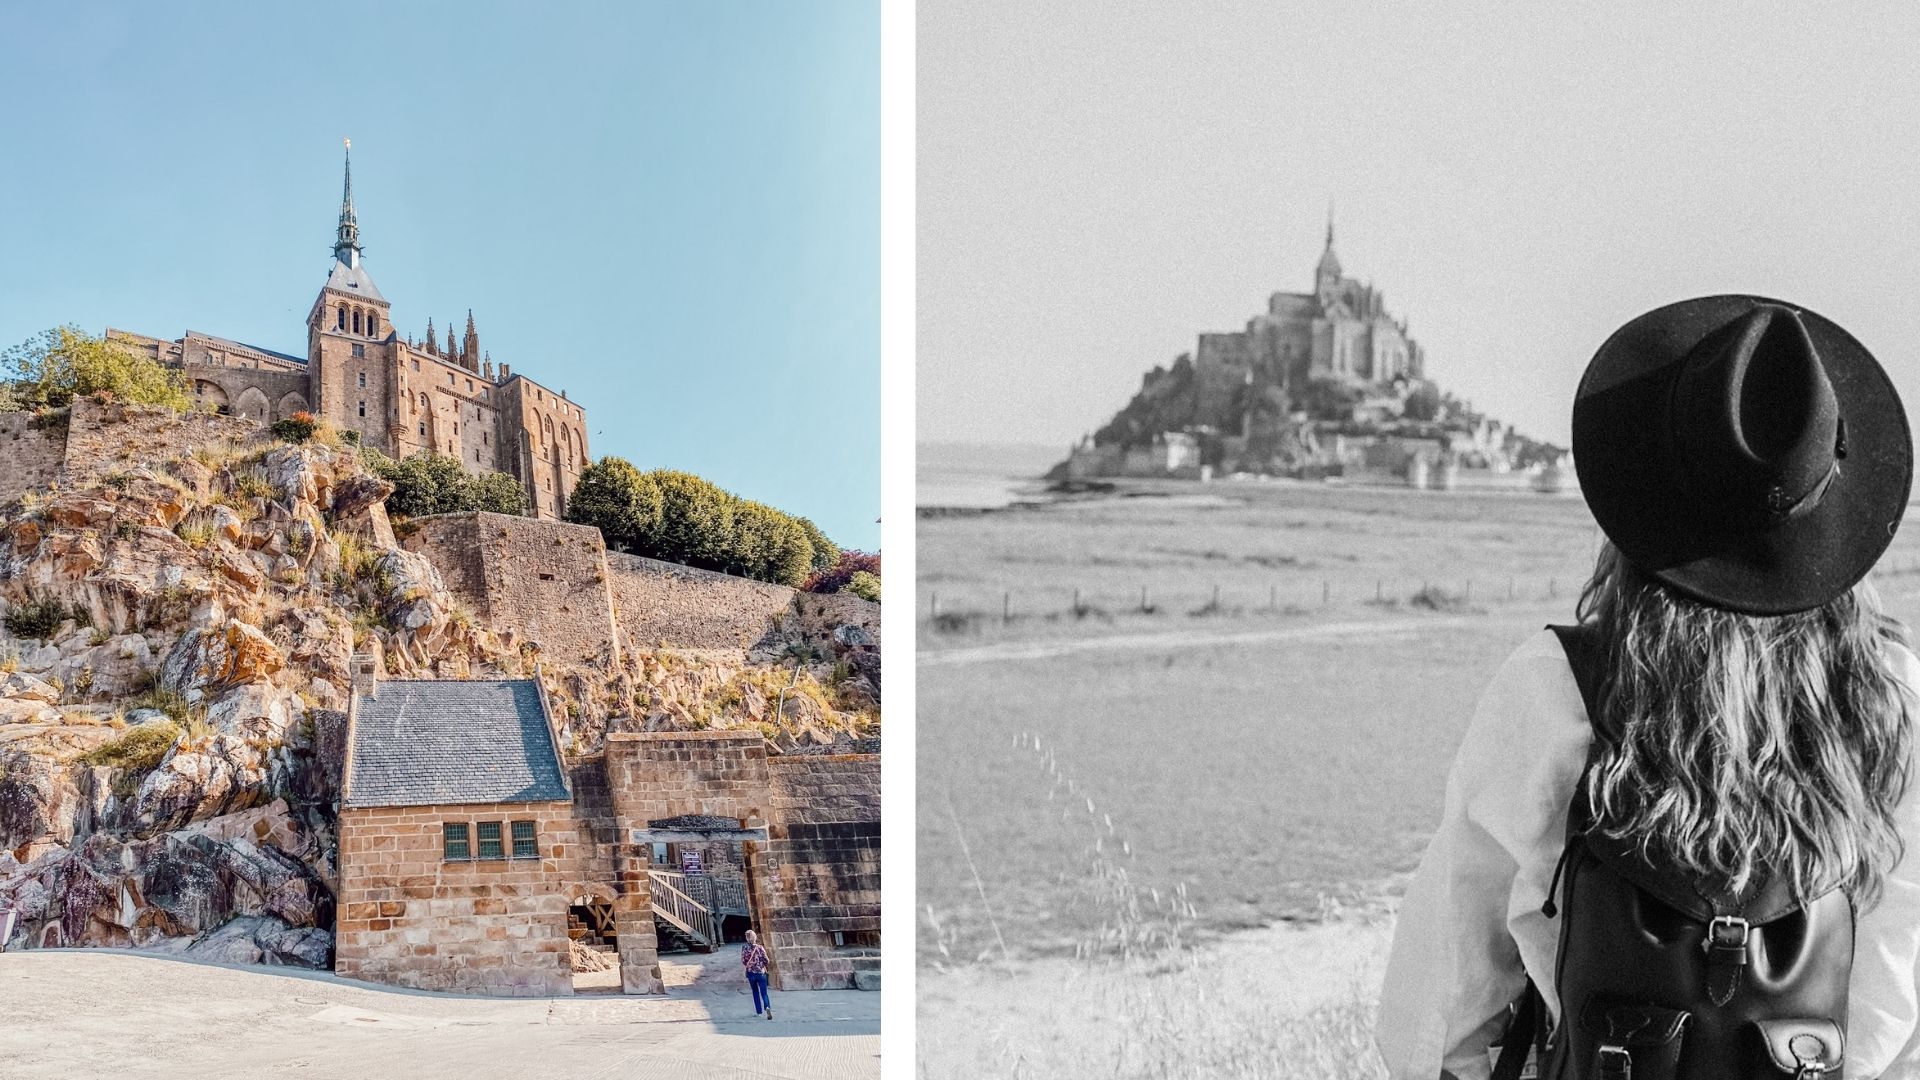 Visite Mont-Saint-Michel quand ?